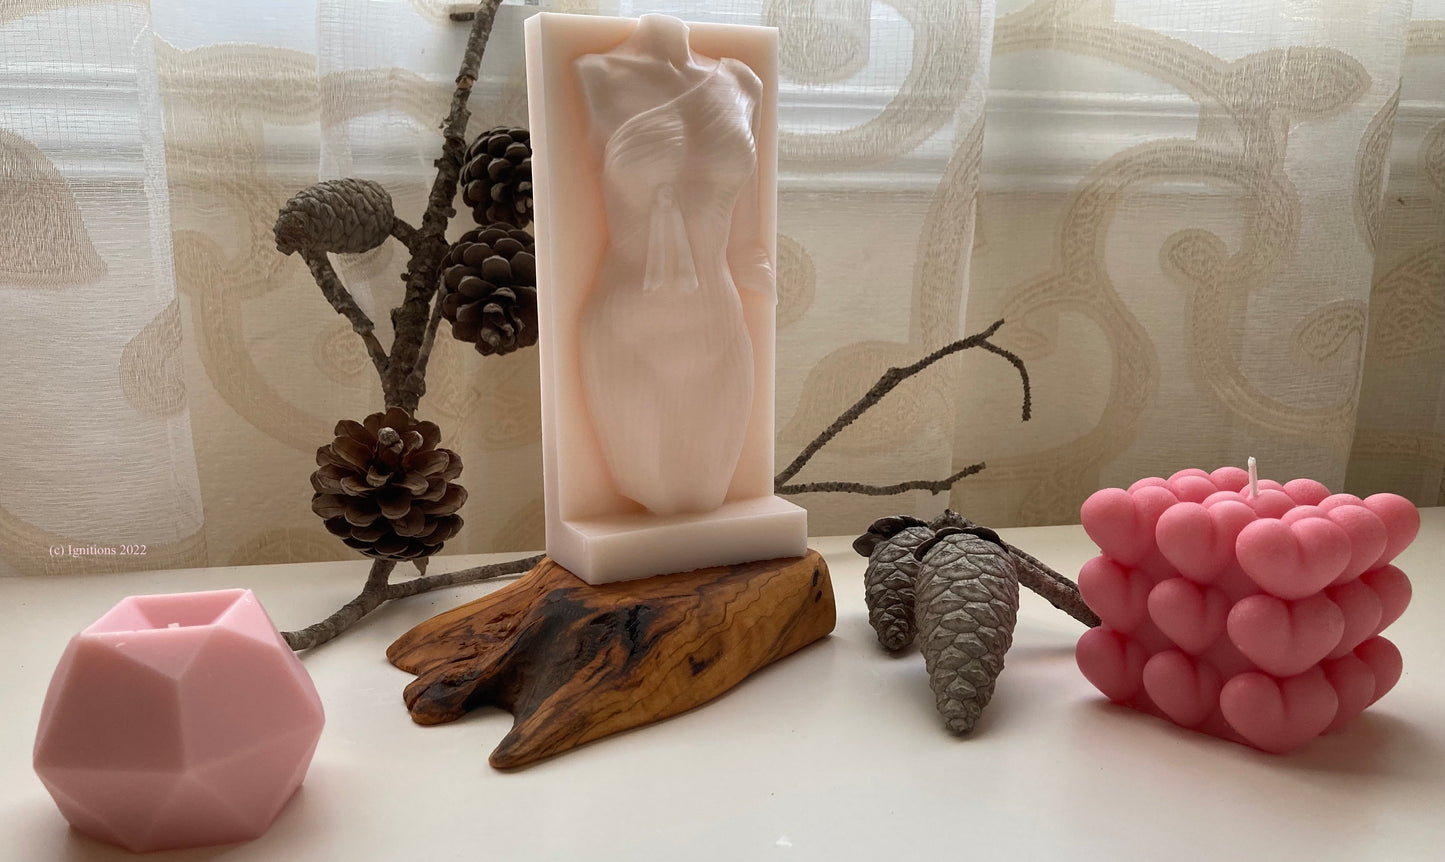 Νεφερτίτη - Κέρινο γλυπτό με βάση από ξύλο ελιάς και συνοδευτικά αρωματικά κεριά (σετ για δώρο). (Παραφίνη) - Με άρωμα Γιασεμί